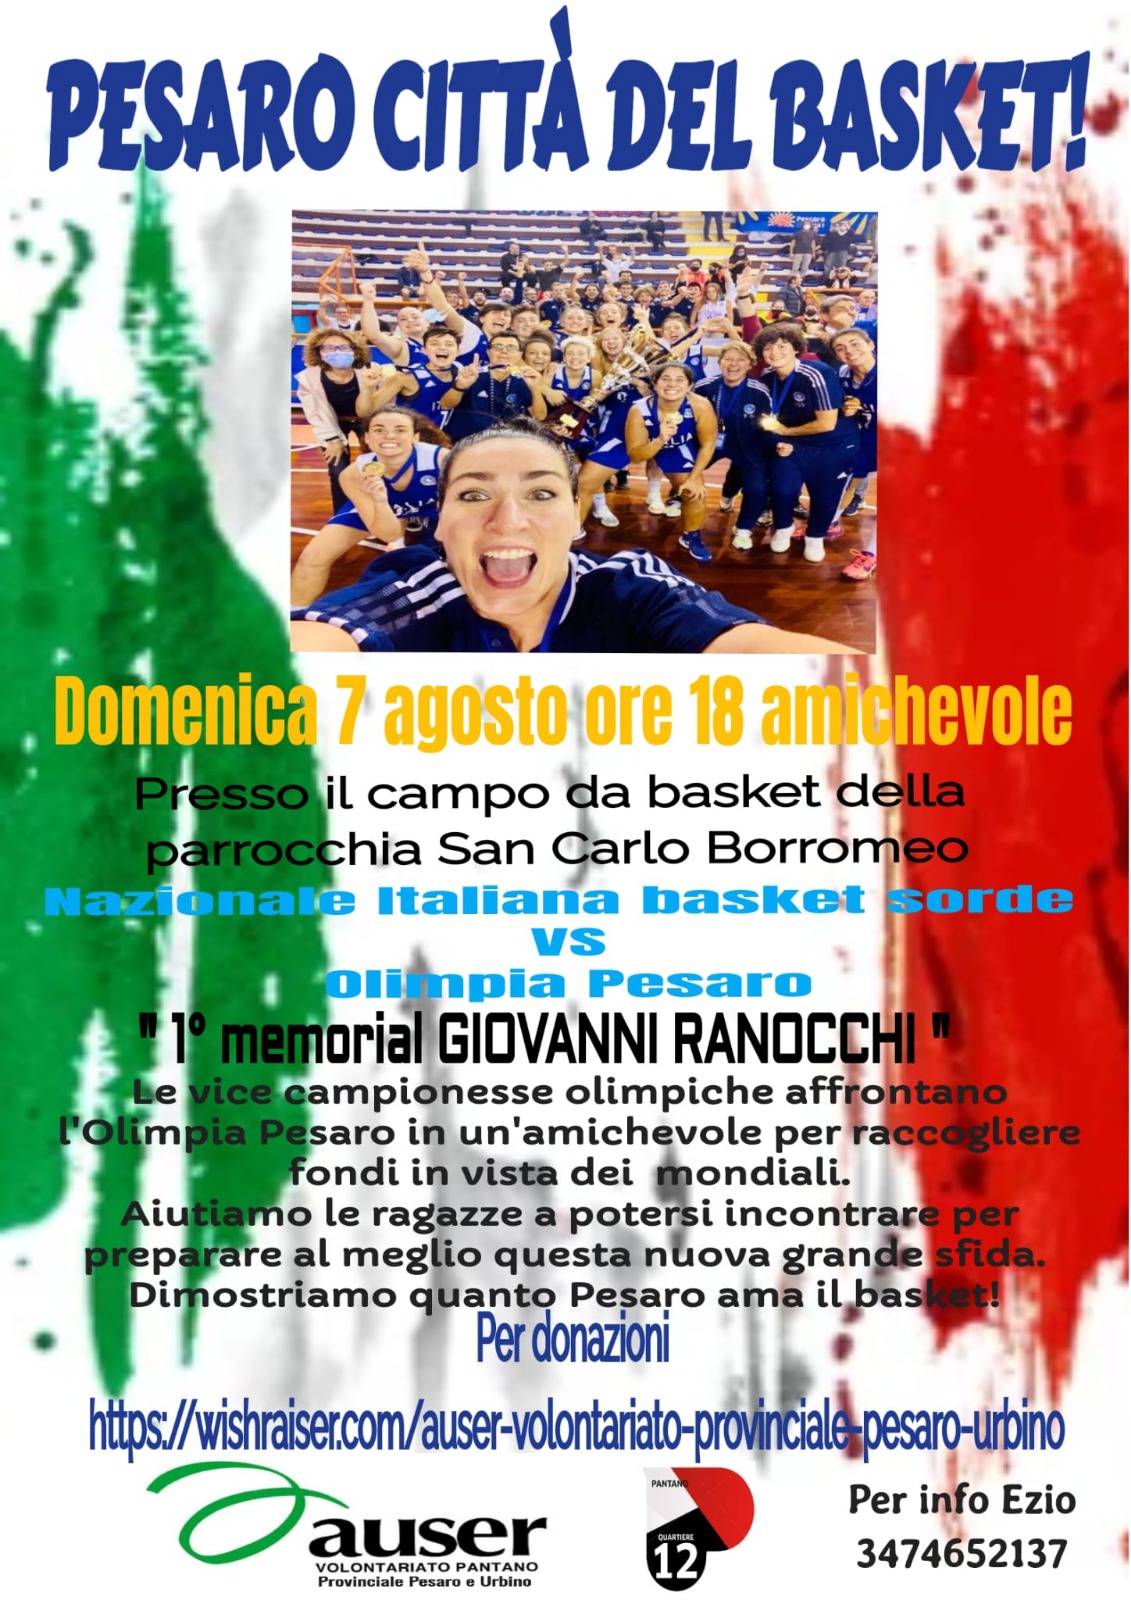 Il 1° Memorial Giovanni Ranocchi riporta a Pesaro la nazionale di basket sorde